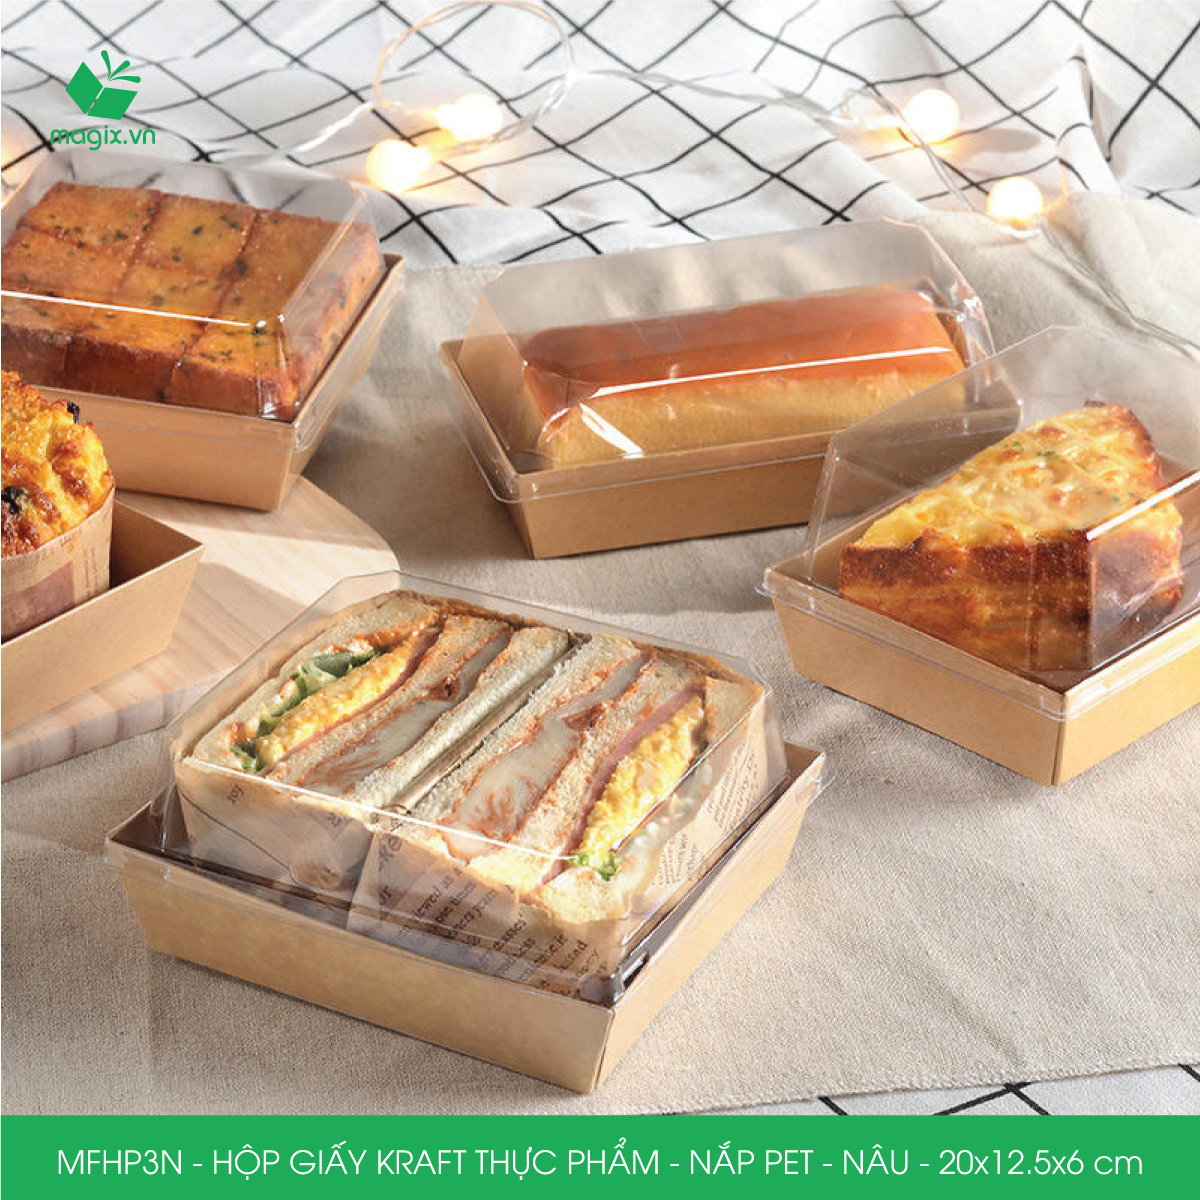 Hình ảnh MFHP3N - 20x12.5x6 cm - 50 hộp giấy kraft thực phẩm màu nâu nắp Pet, hộp giấy chữ nhật đựng thức ăn, hộp bánh nắp trong